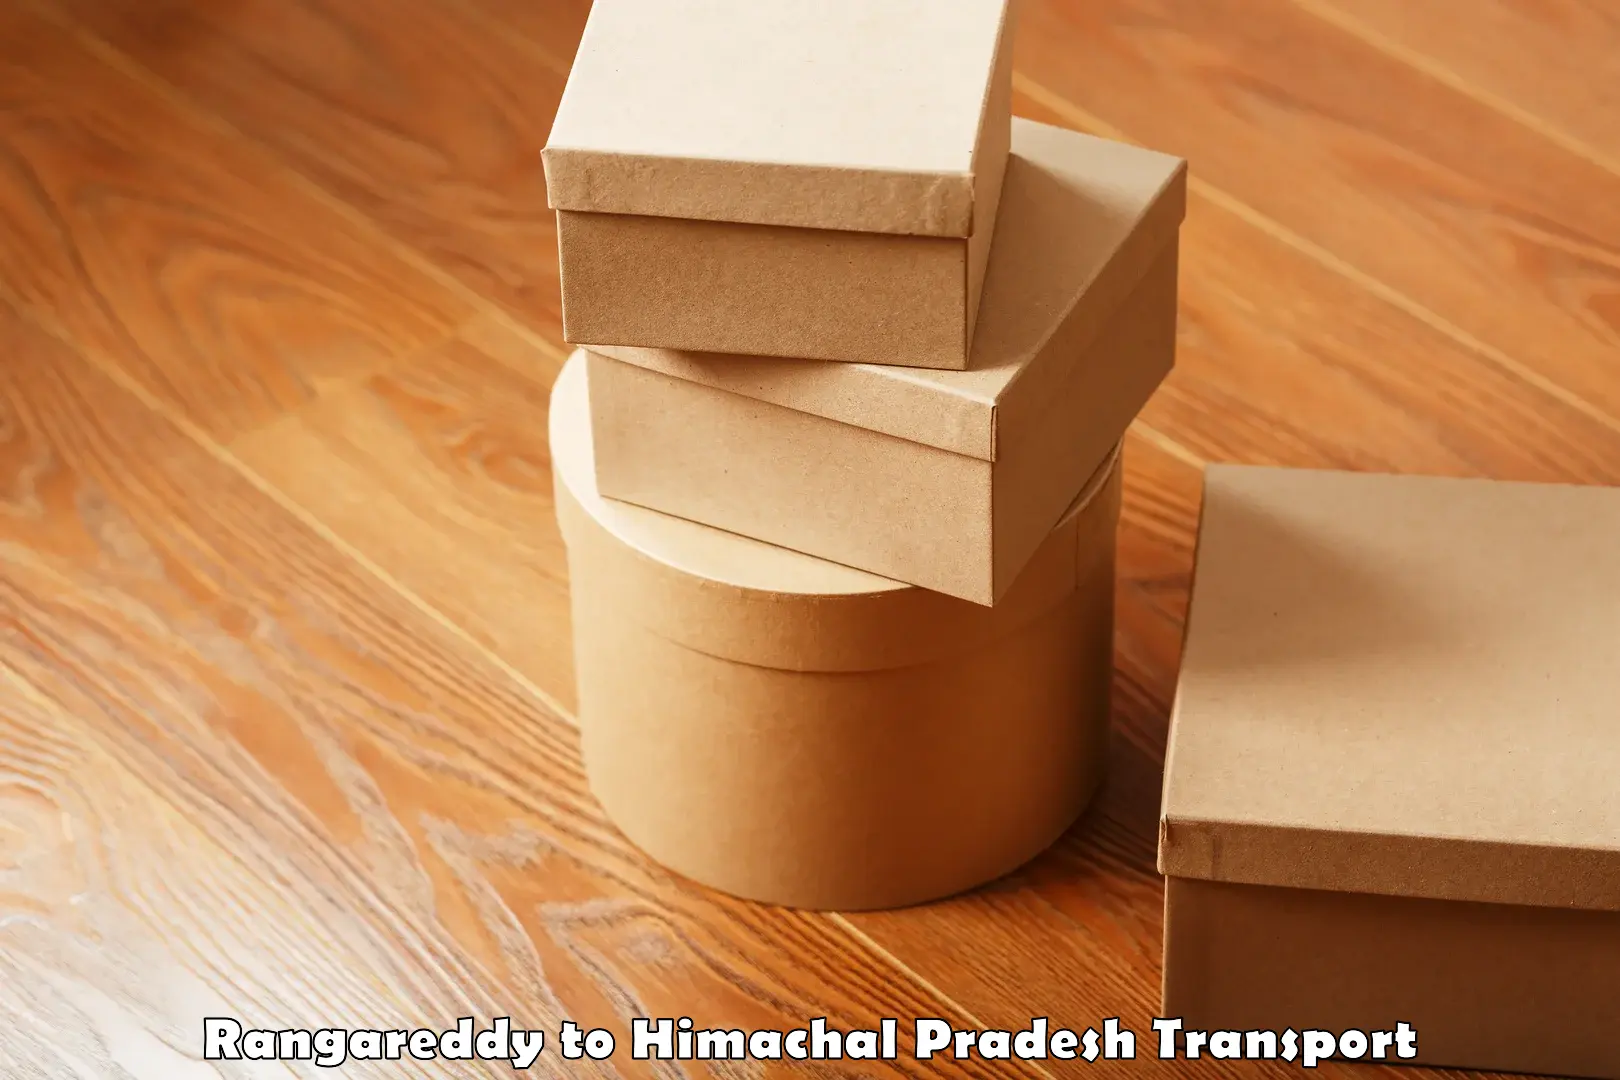 Two wheeler parcel service Rangareddy to Una Himachal Pradesh